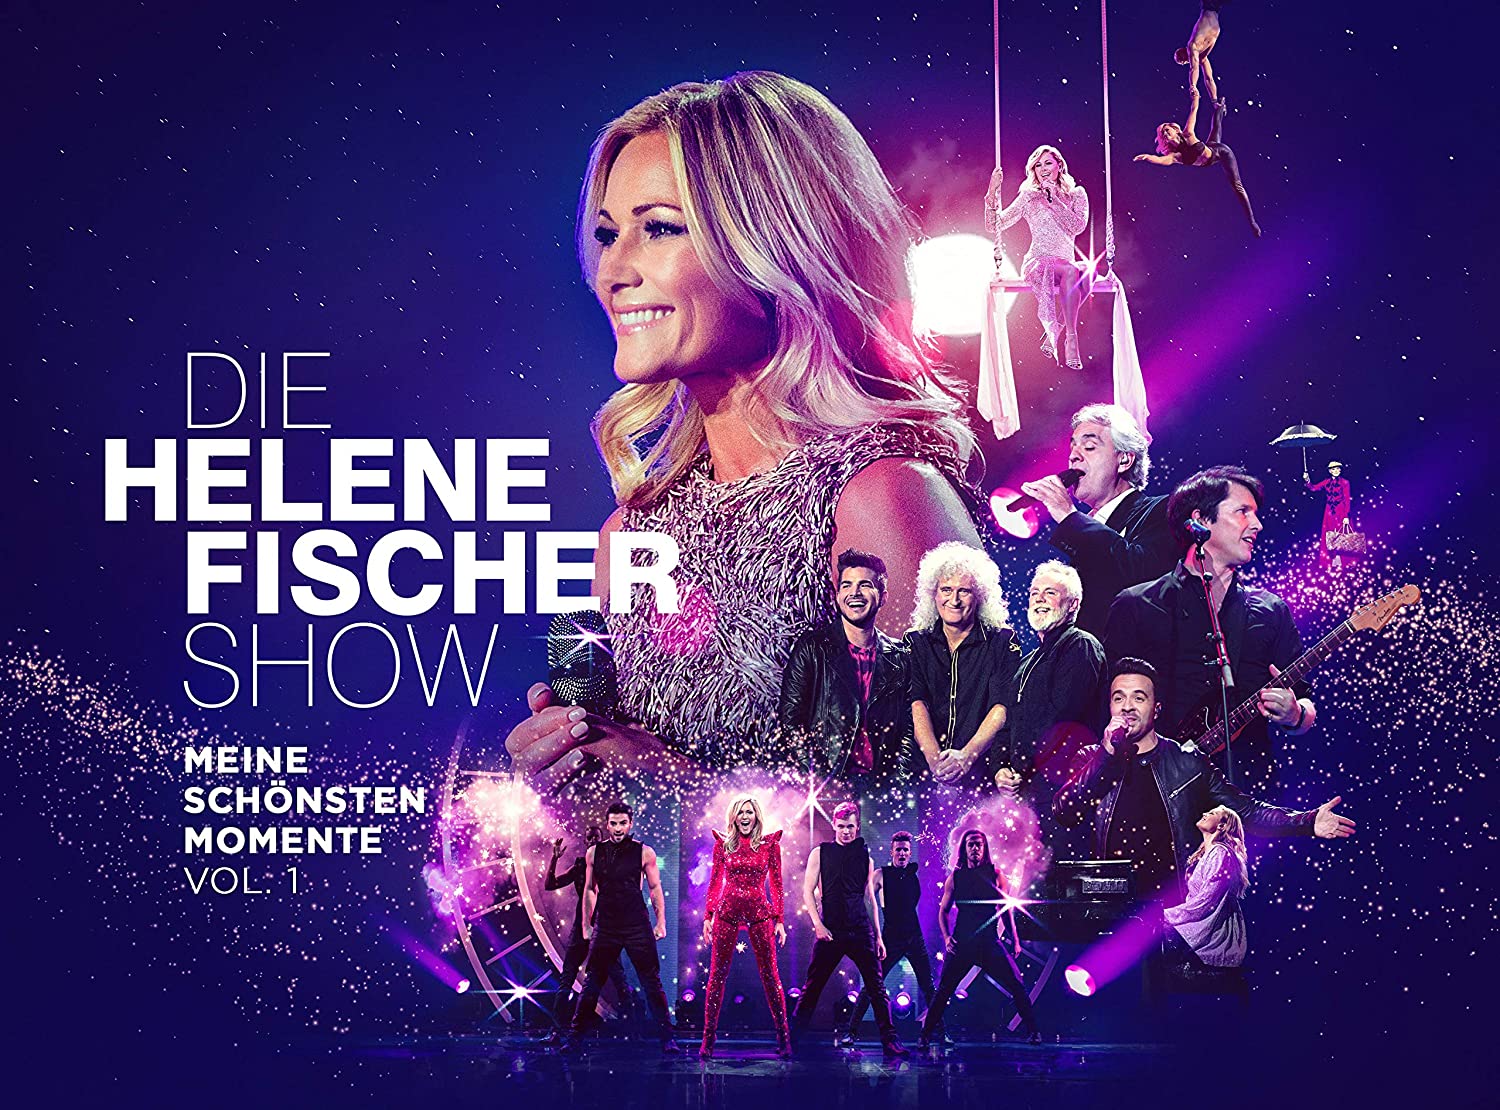 Das Neue Album Zur Helene Fischer Show Erscheint Am 04 12 2020